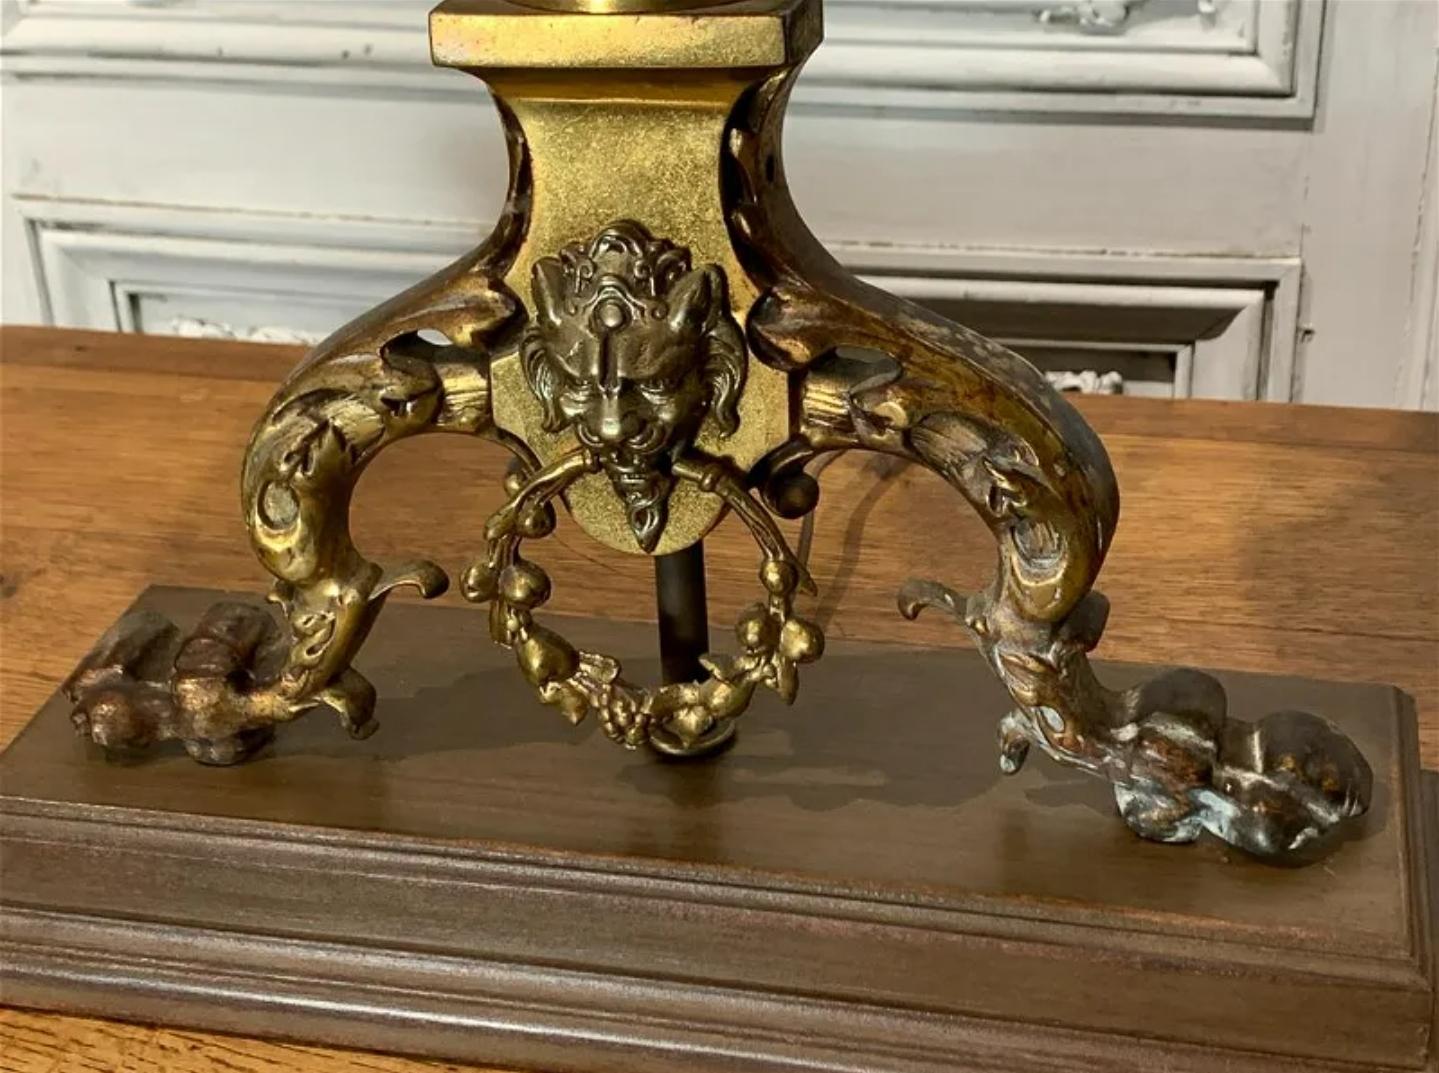 Ein imposantes Paar antiker französischer Chenets (Andirons) aus der viktorianischen Gotik, die als Tischlampen gestaltet sind.  

Exquisit handgefertigt in Frankreich, 19. Jh., außergewöhnlich gut ausgeführte Pariser Arbeit, beeindruckend groß,